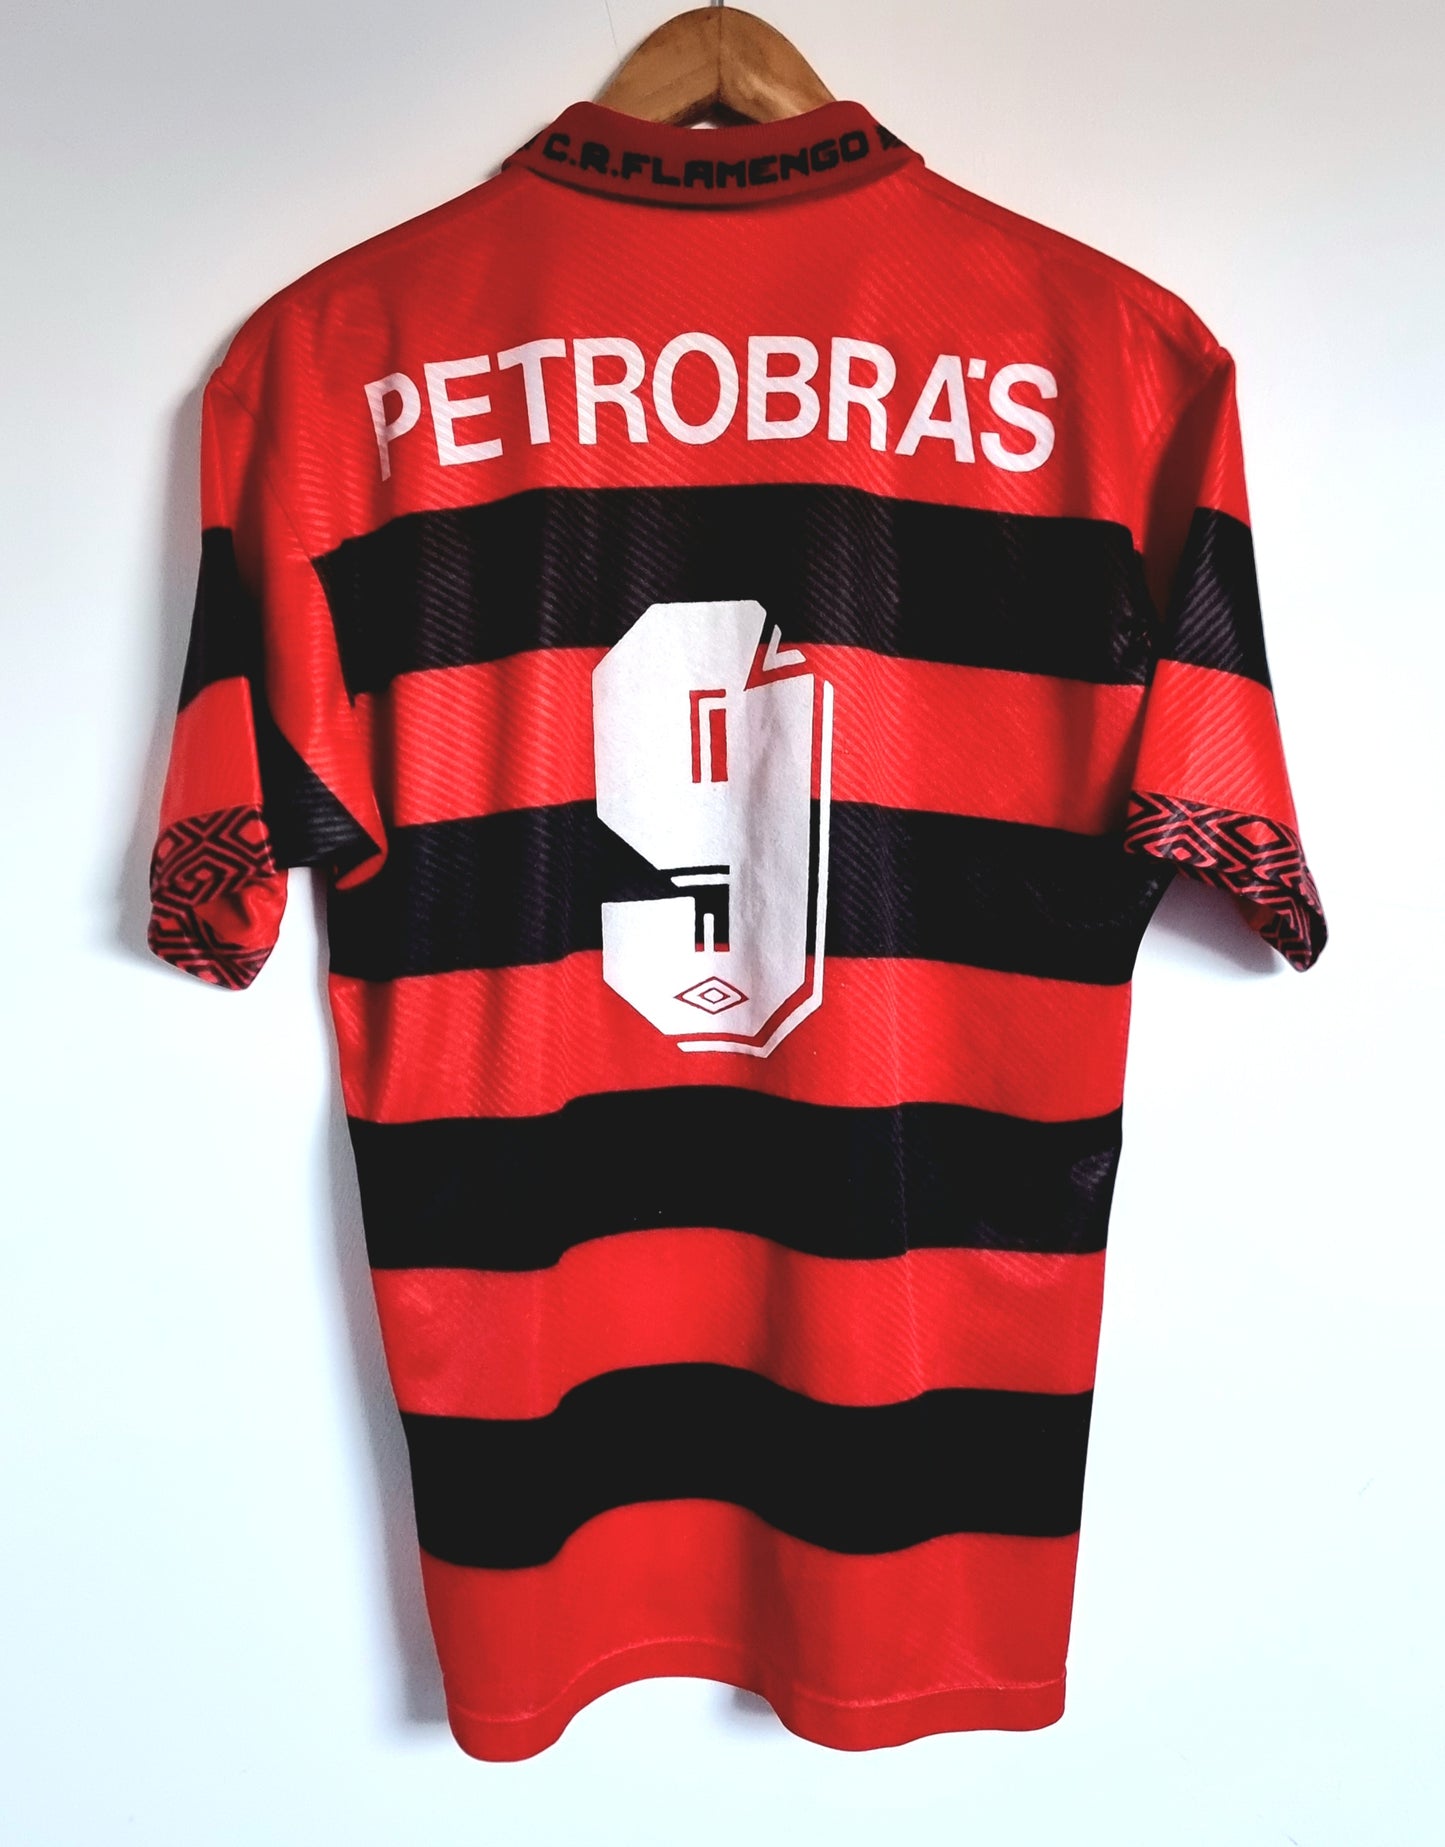 Umbro Flamengo 94/95 Home Shirt Medium